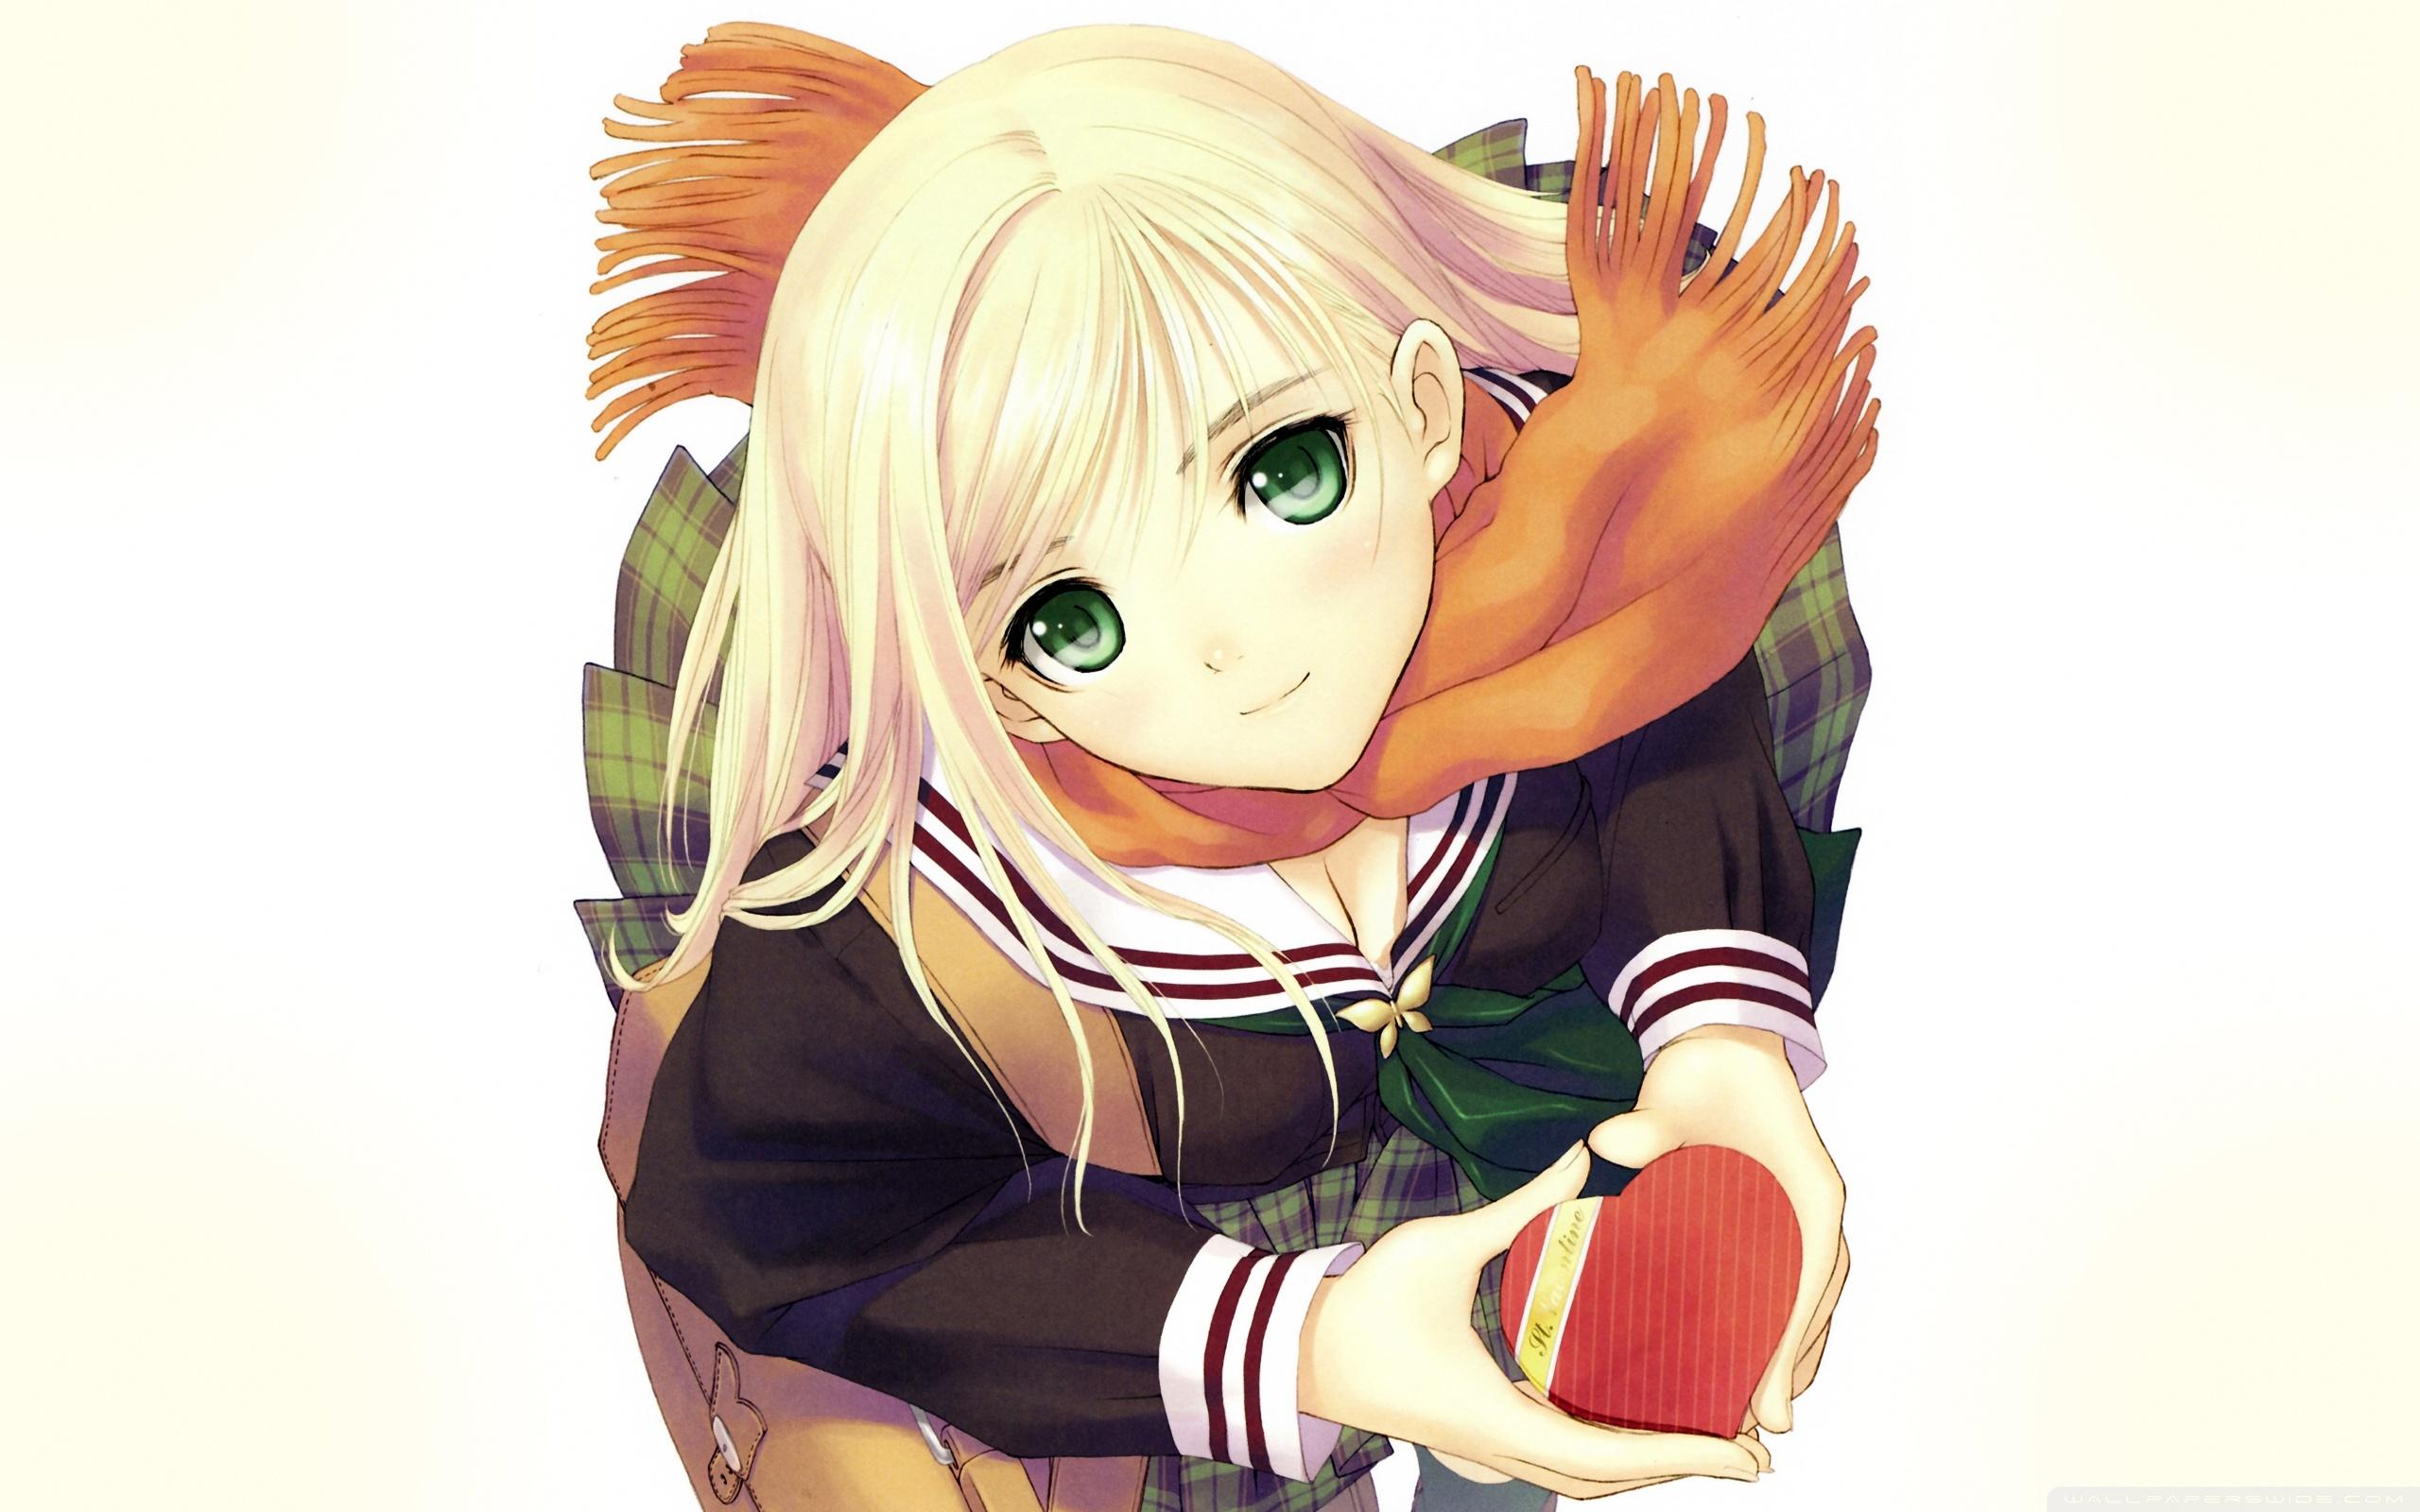 Anime Smiling Girl Ultra HD Desktop Background Wallpaper for 4K